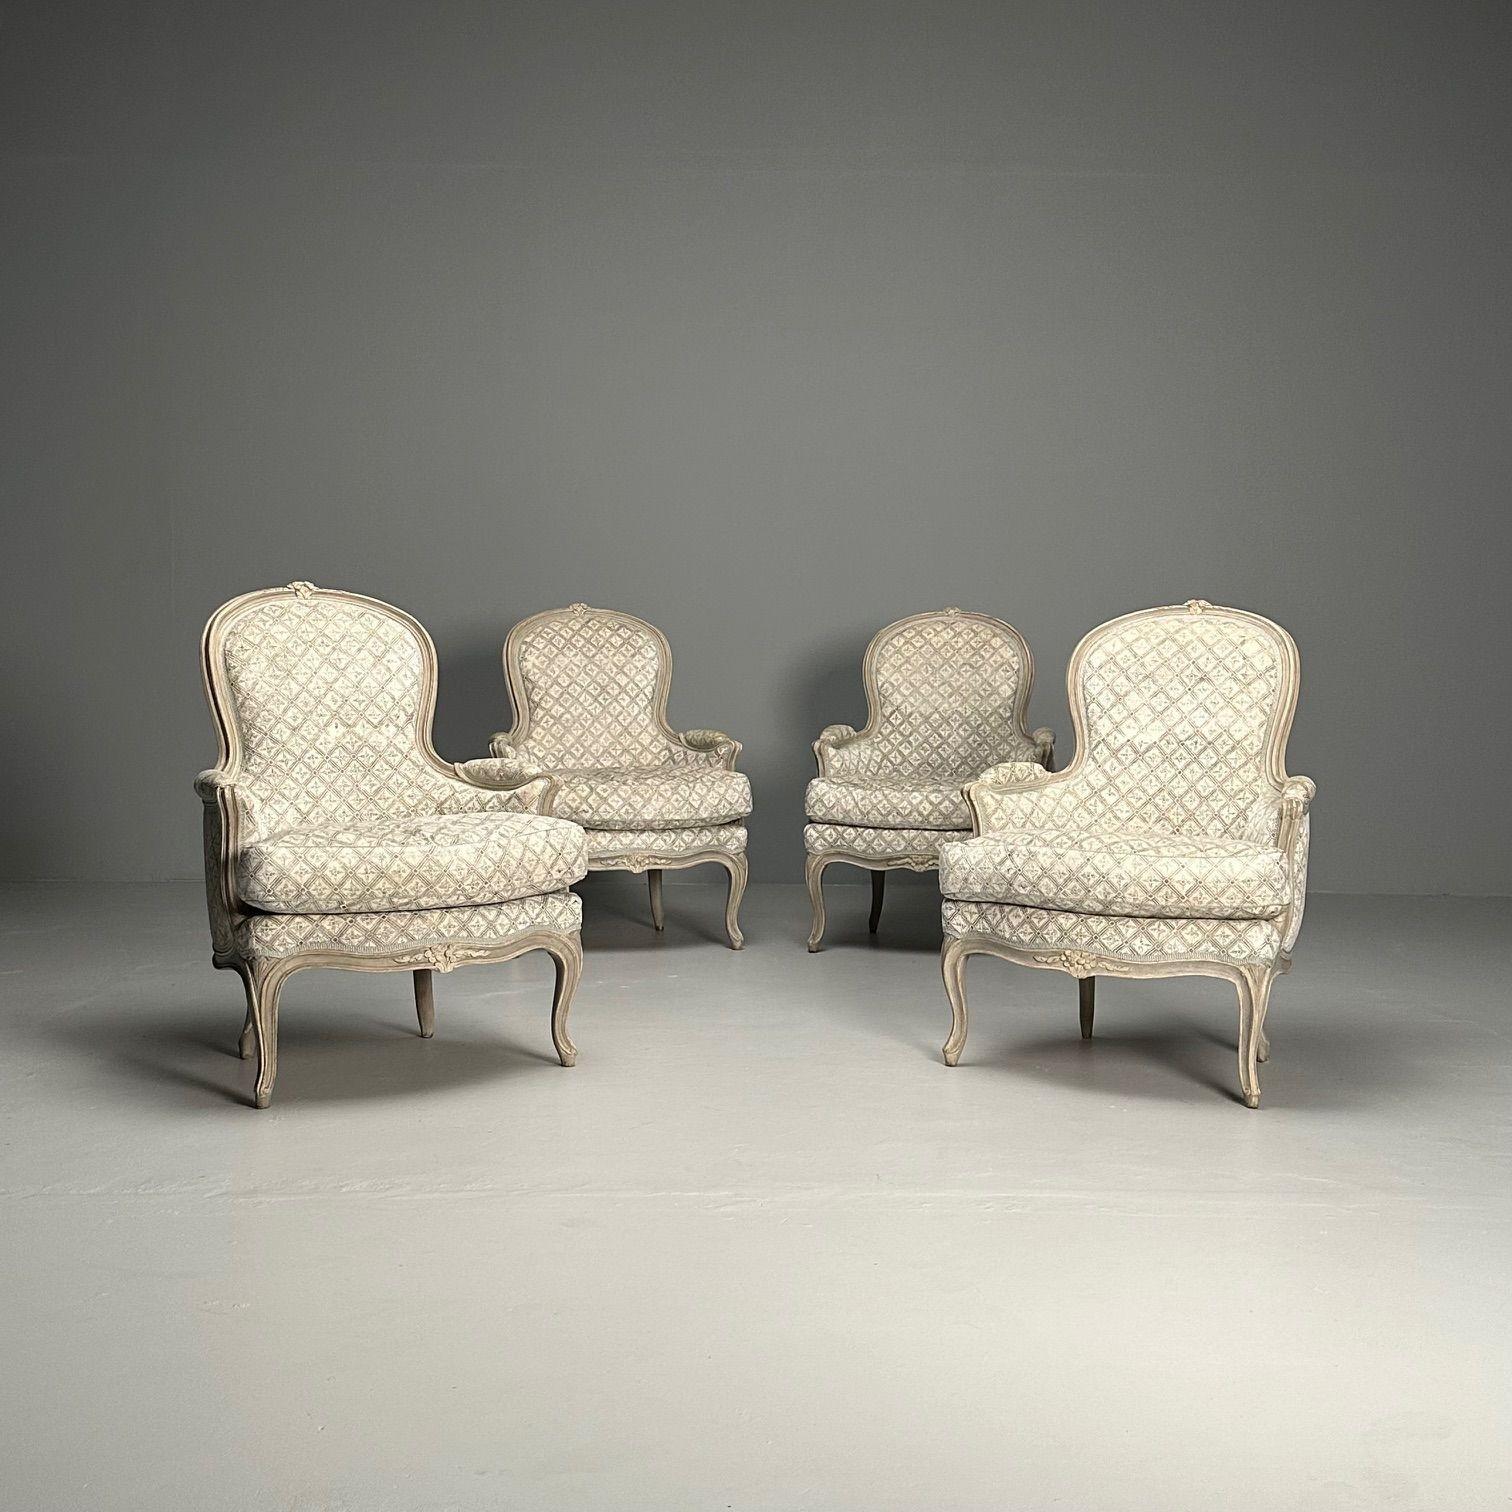 Louis XV Stil, Arm / Bergere Stühle, Grau lackiertes Holz, Stoff, Frankreich

Satz von vier Sesseln, zwei frühere aus den 1890er Jahren und zwei spätere mit feiner Polsterung. Diese Stühle, die bei einem Herrn aus Greenwich CT in Auftrag gegeben